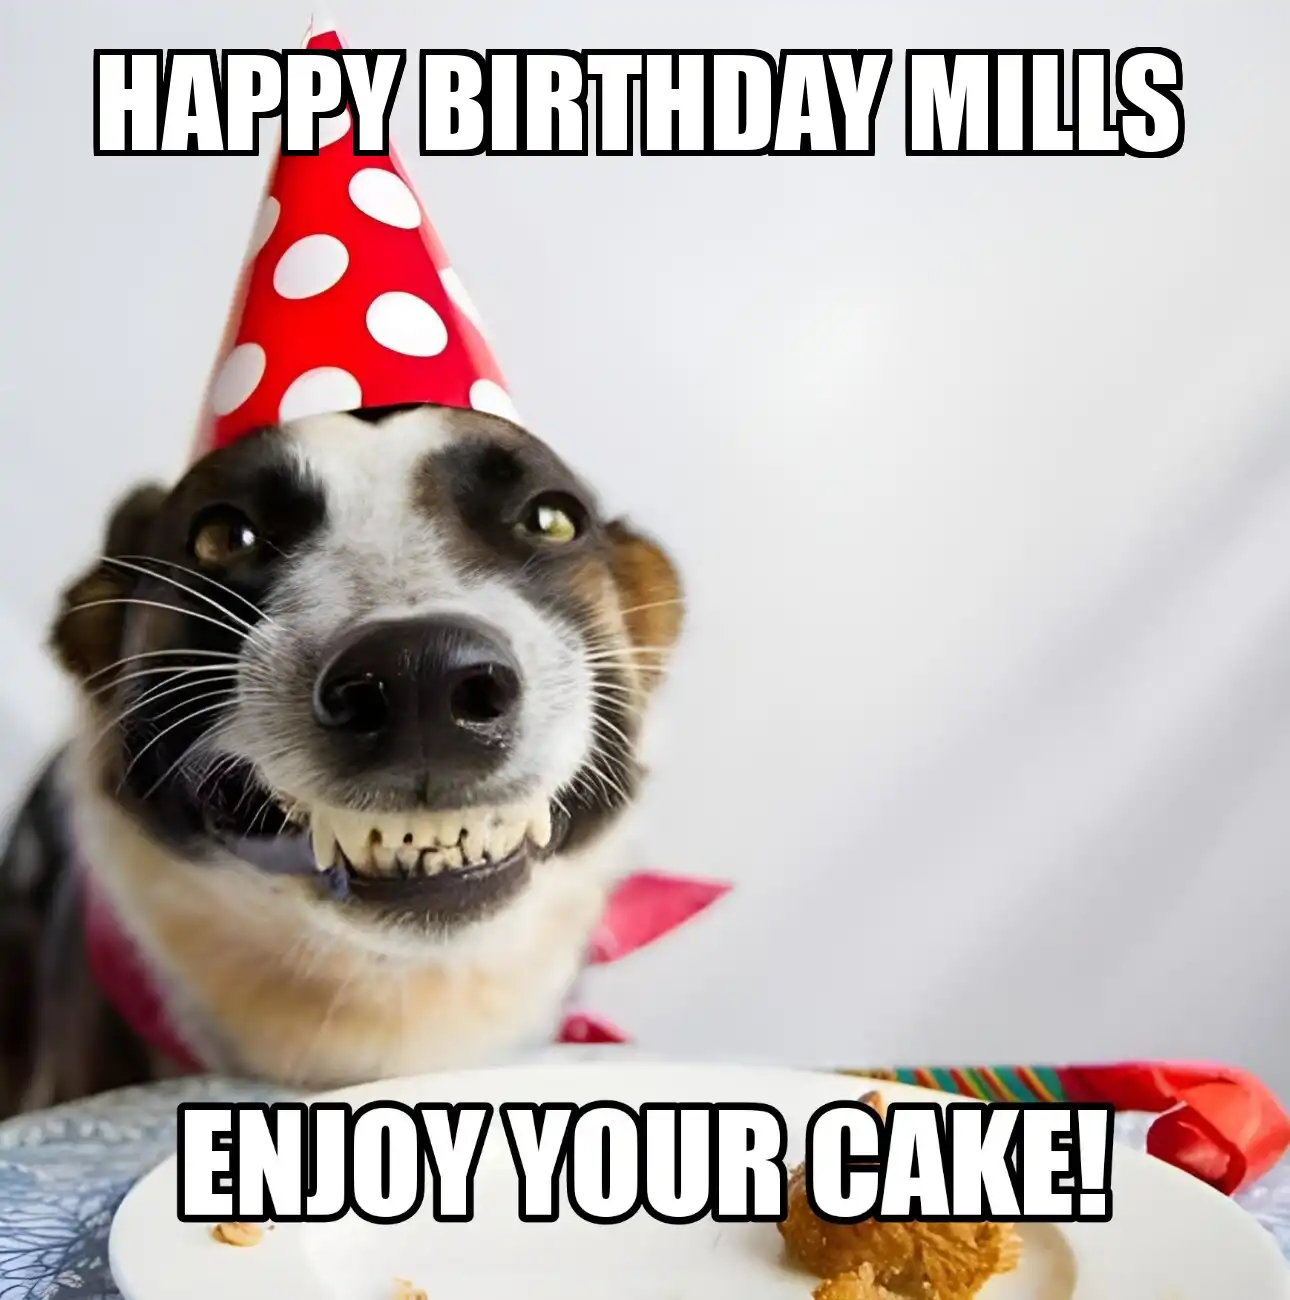 Happy Birthday Mills Enjoy Your Cake Dog Meme